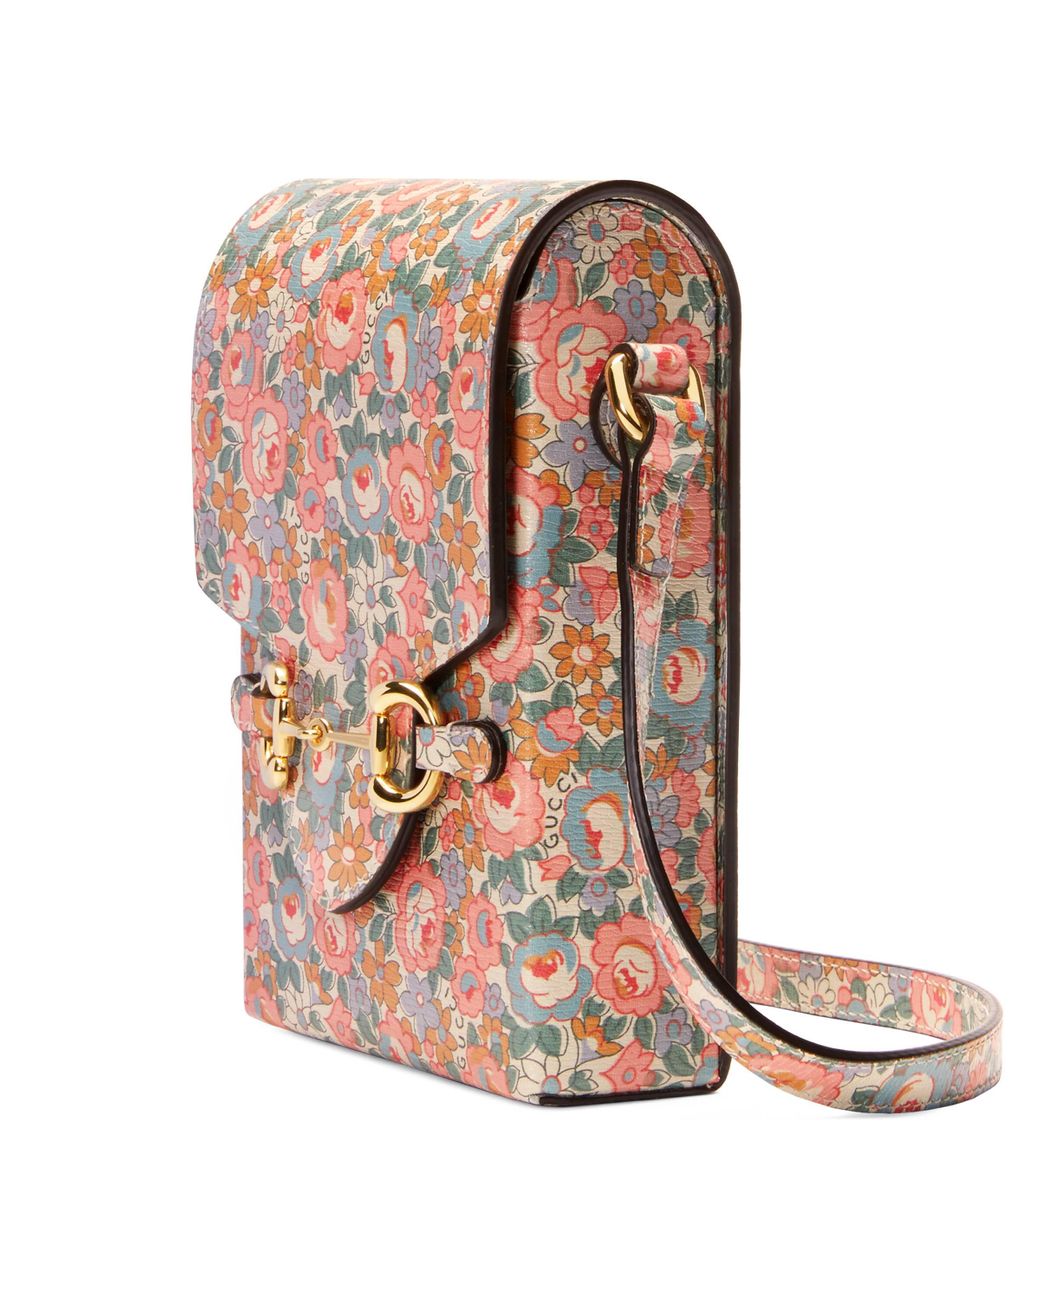 gucci floral mini bag